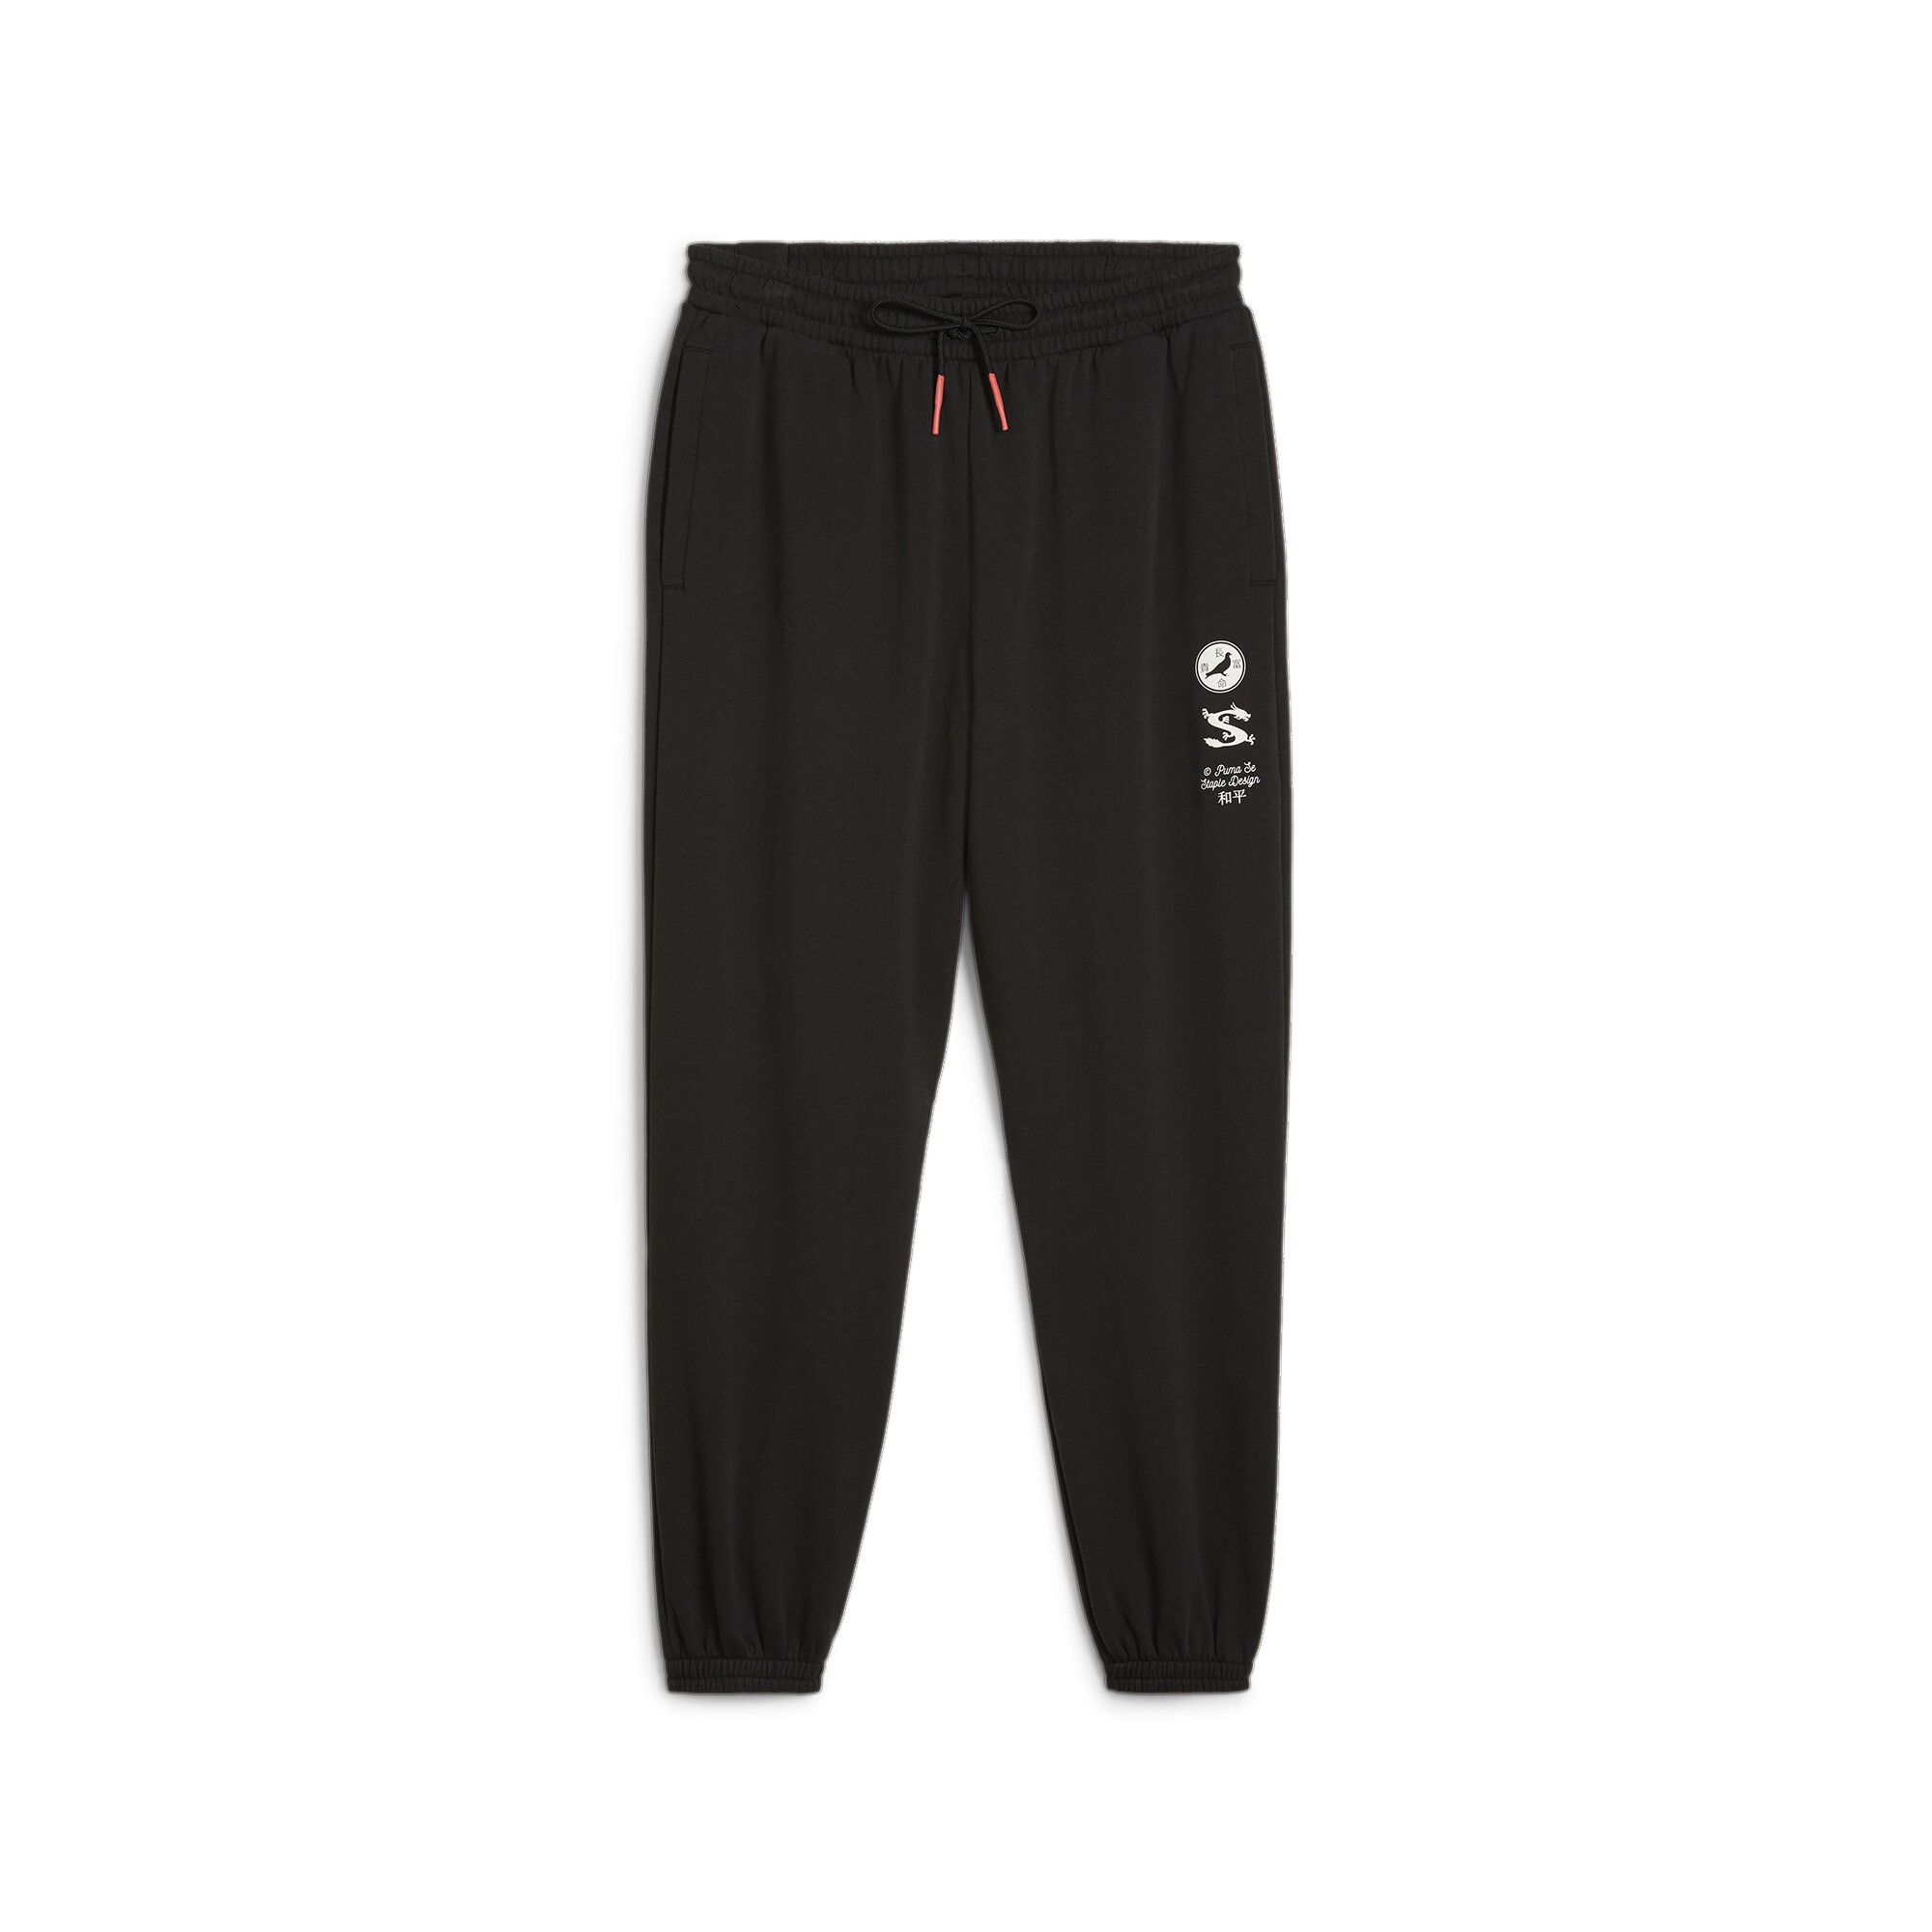 Men's Puma X STAPLE Track Pants, Black, Size L, Clothing